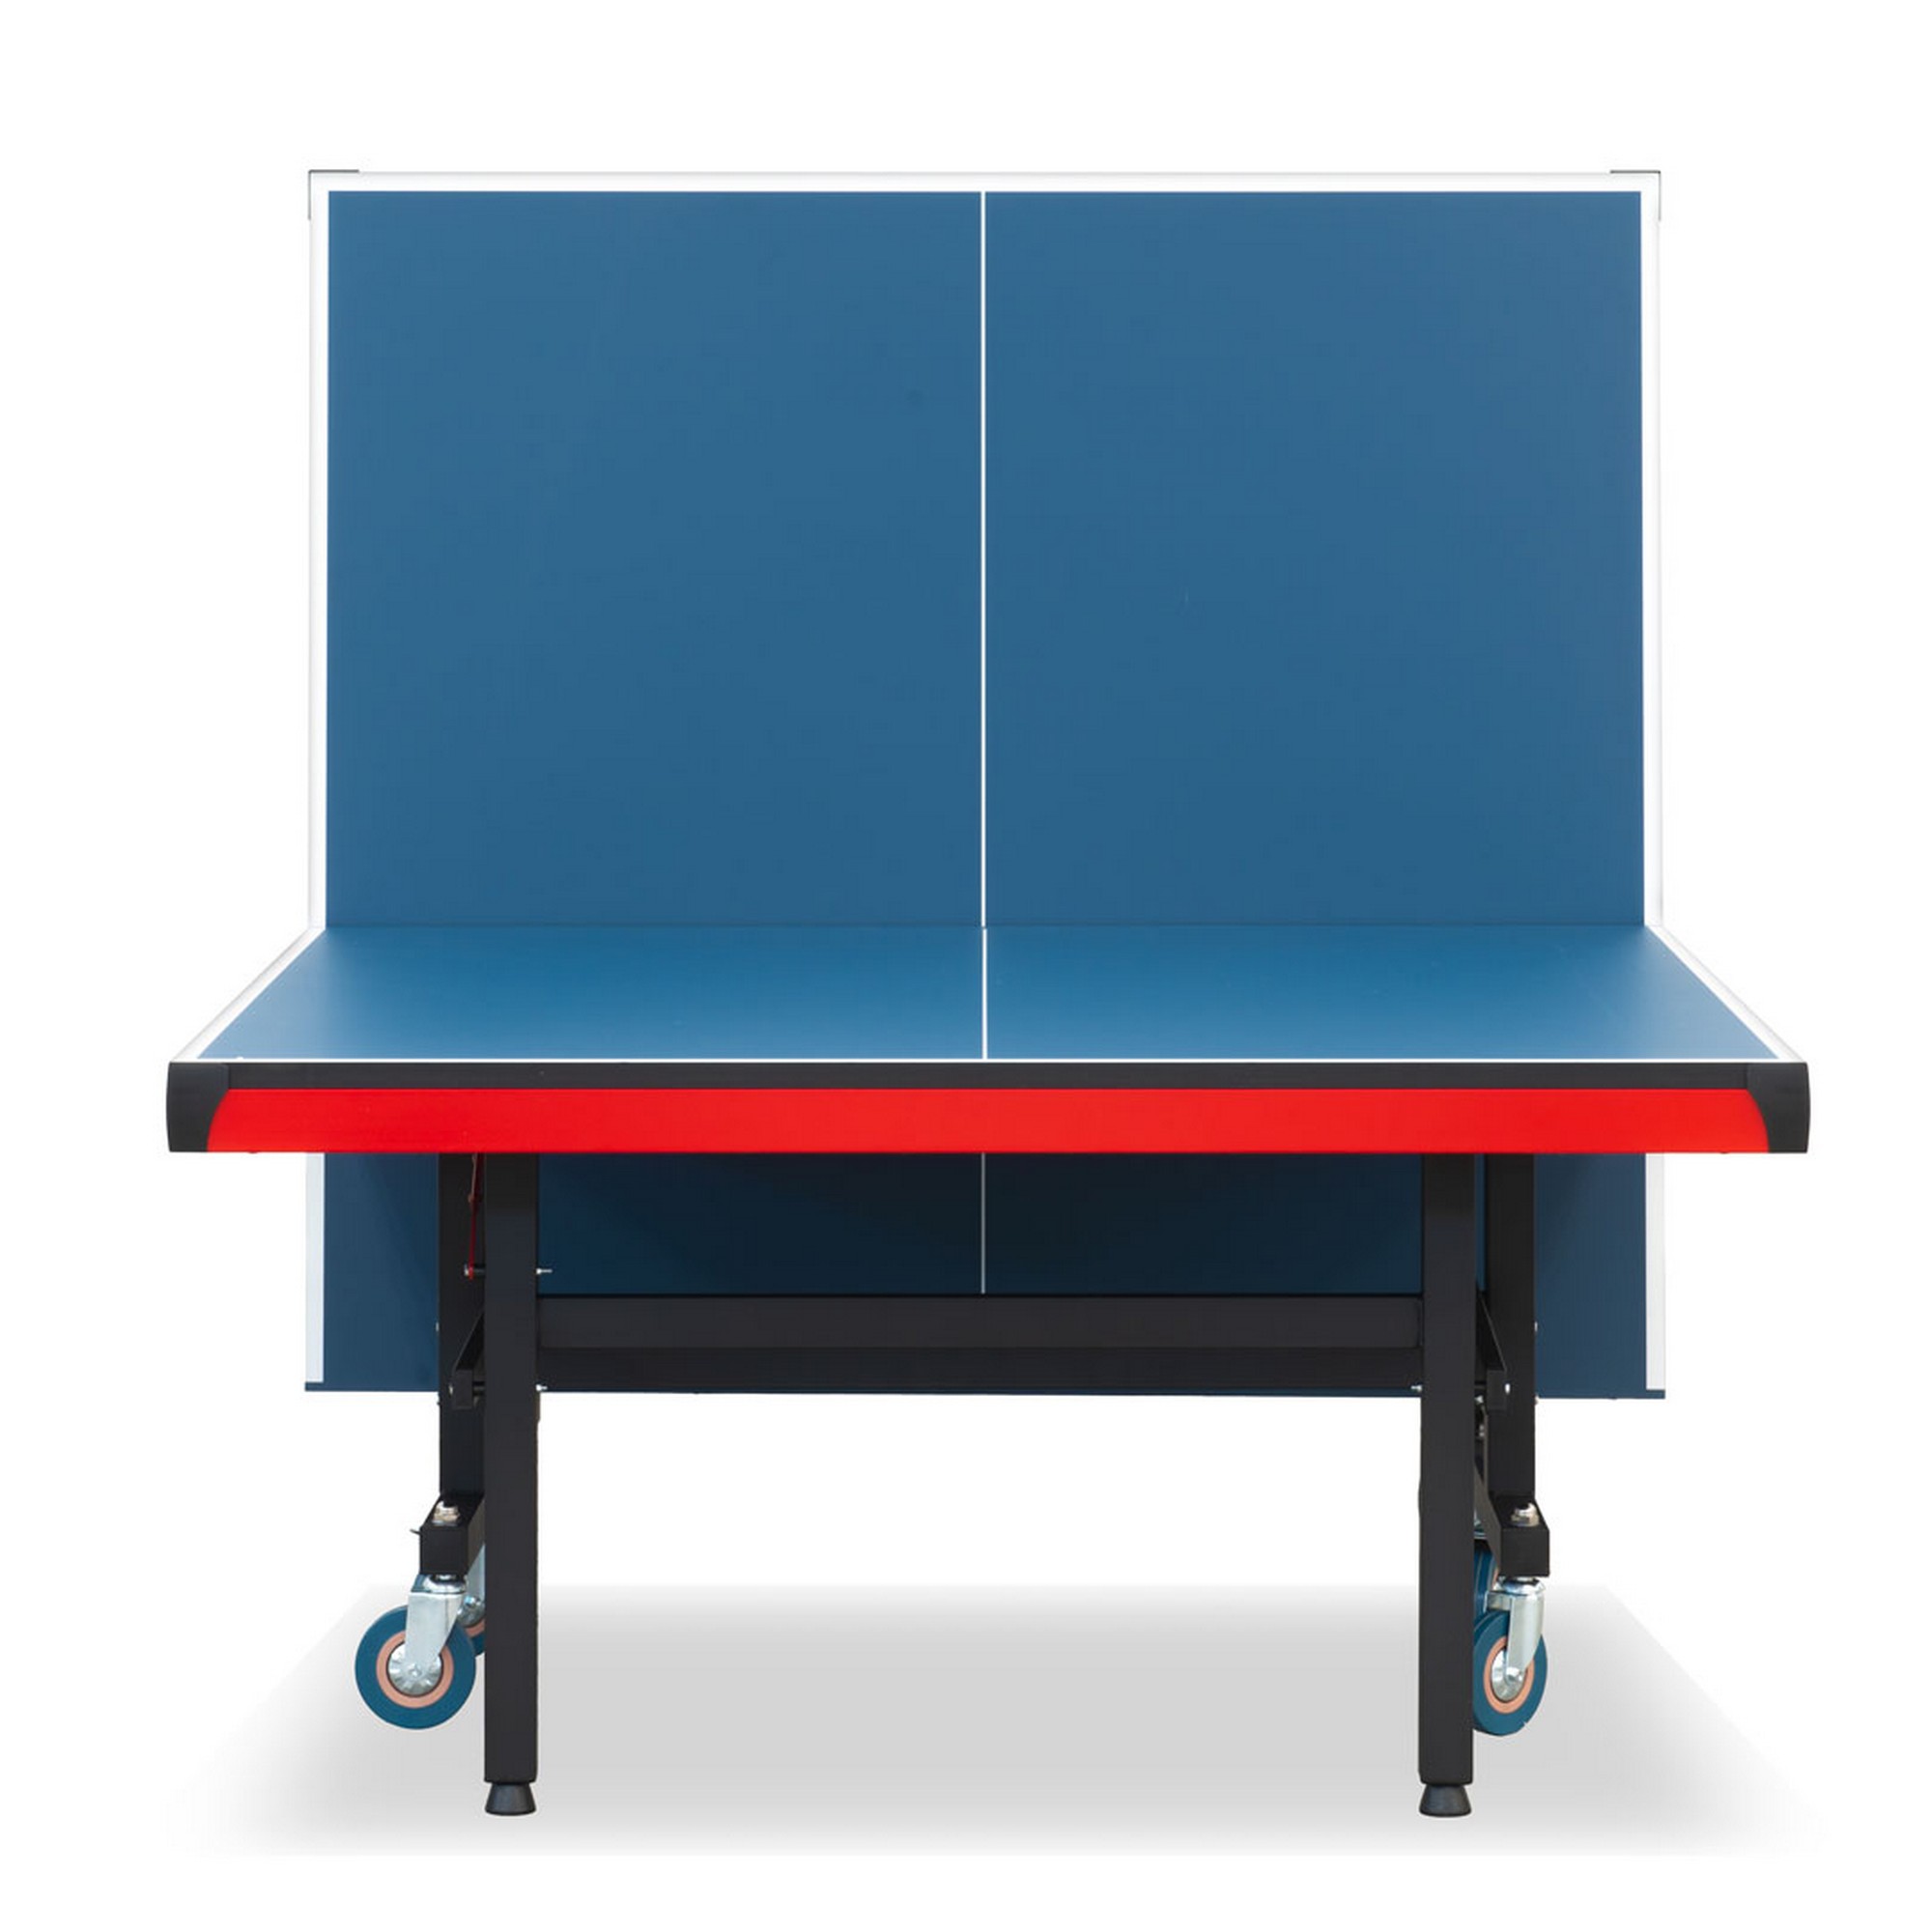 Теннисный стол складной для помещений S-380 Winner 51.380.02.0 2000_2000